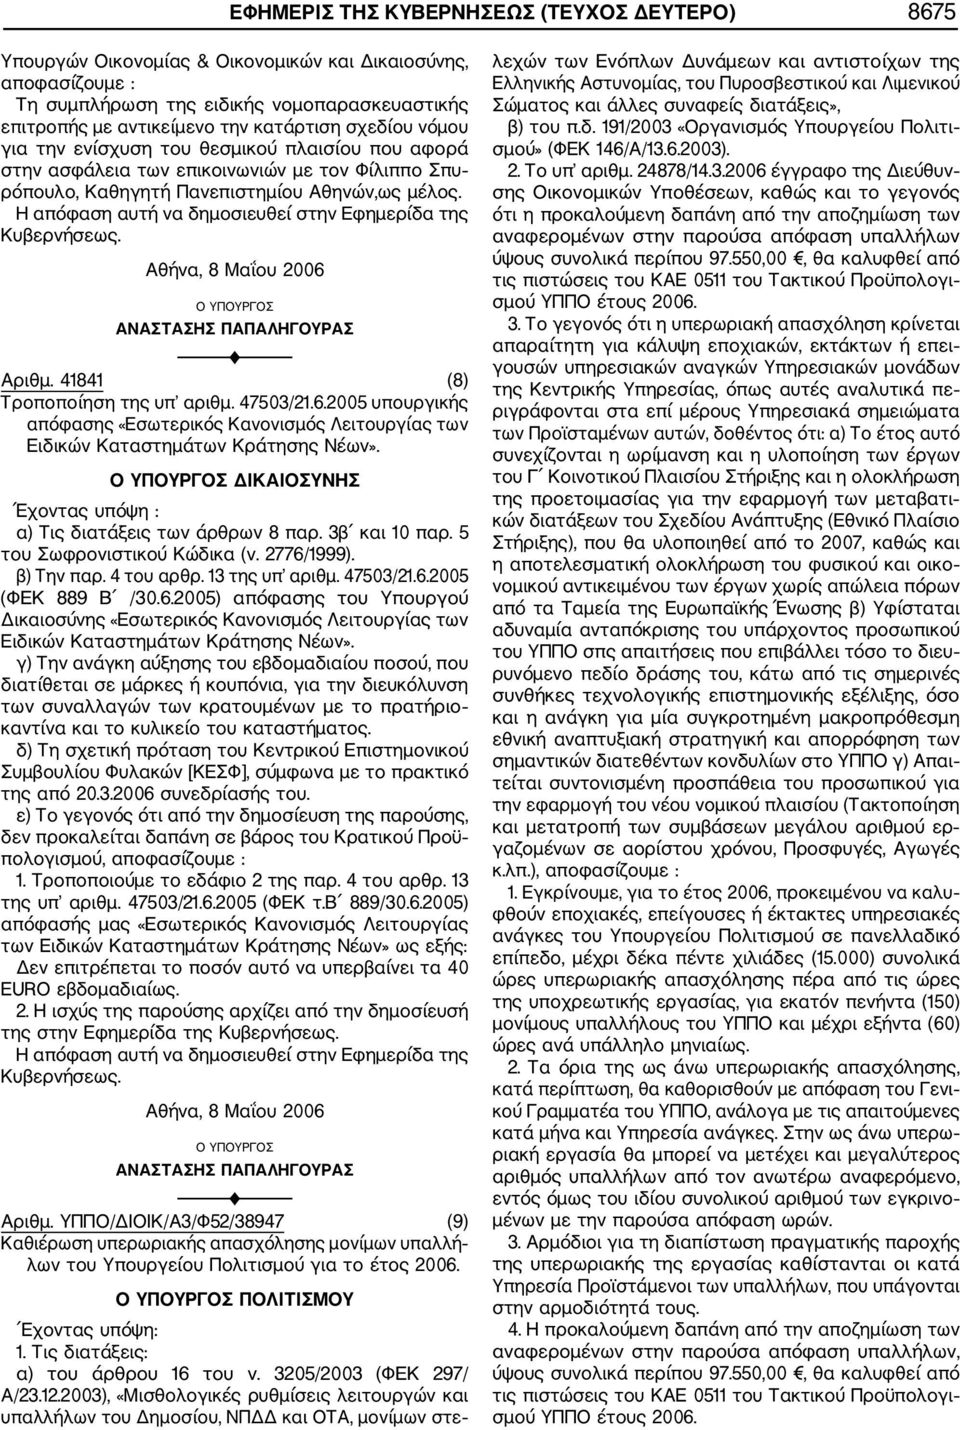 Αθήνα, 8 Μαΐου 2006 ΑΝΑΣΤΑΣΗΣ ΠΑΠΑΛΗΓΟΥΡΑΣ Αριθμ. 41841 (8) Τροποποίηση της υπ αριθμ. 47503/21.6.2005 υπουργικής απόφασης «Εσωτερικός Κανονισμός Λειτουργίας των Ειδικών Καταστημάτων Κράτησης Νέων».